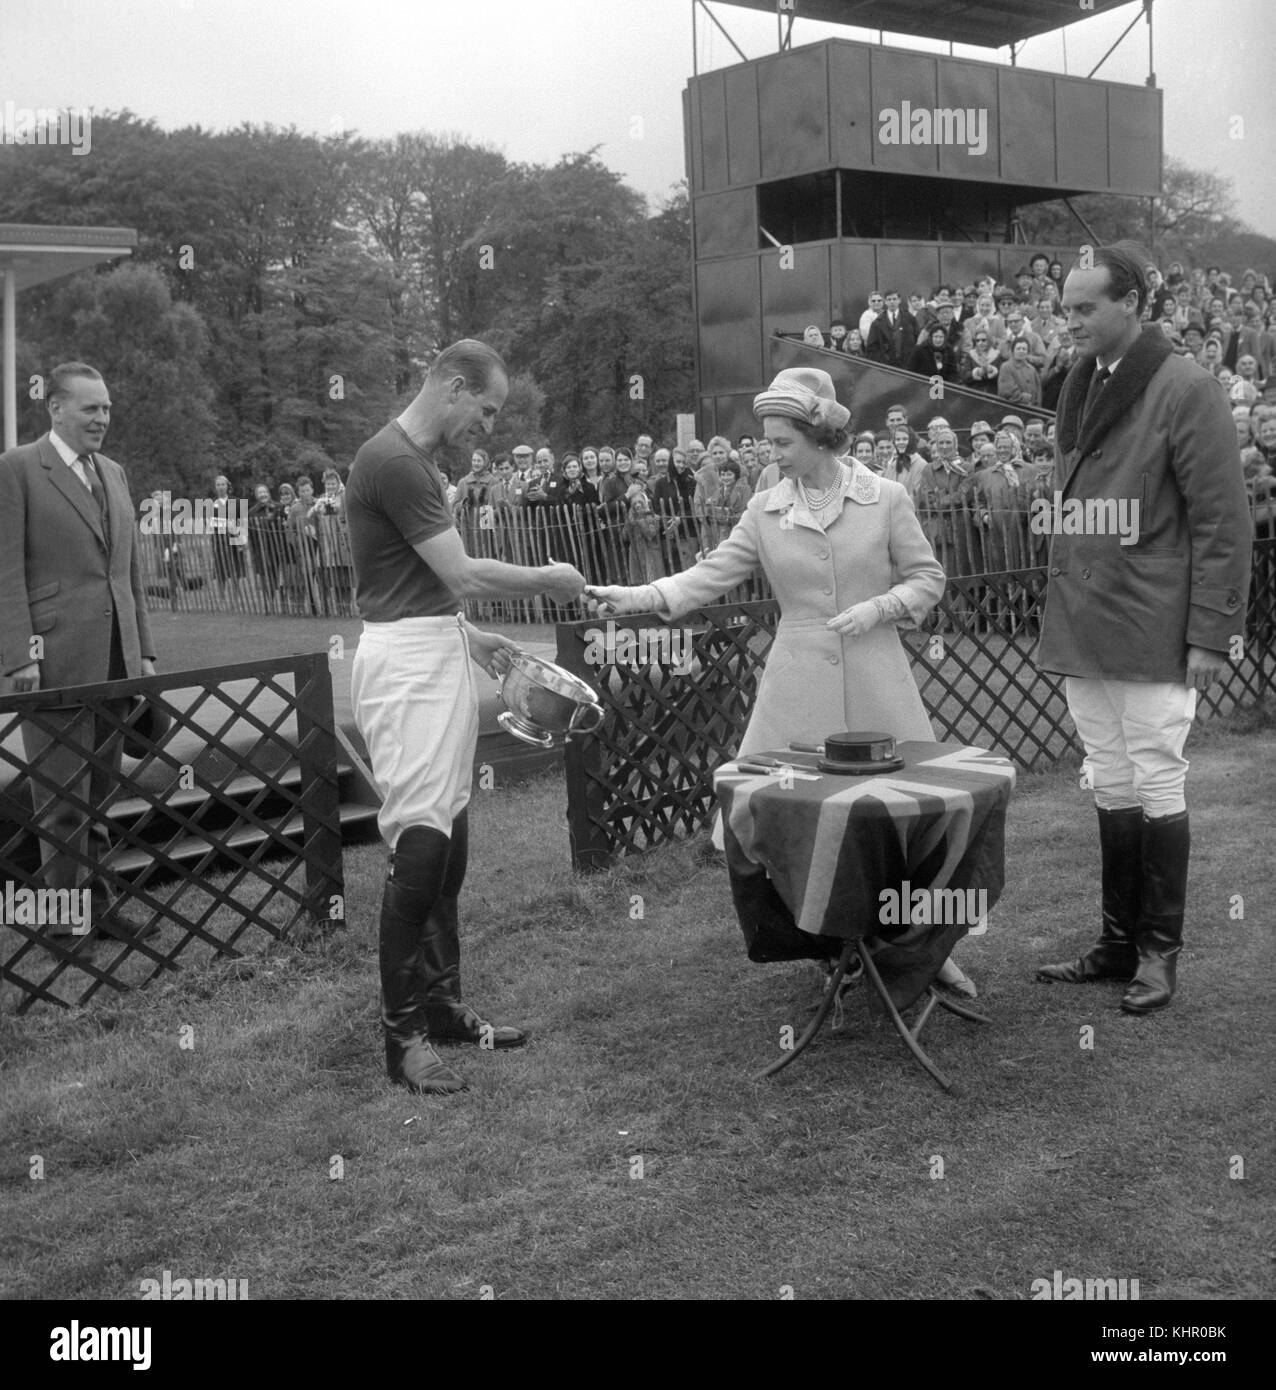 12/05/1963. Königin Elizabeth II. Überreicht den Royal Windsor Horse Show Cup an den Duke of Edinburgh, der als Kapitän des Windsor Park im Finale auf Smith's Lawn, Windsor Great Park, Bucket Hill besiegt hatte. Das Königspaar feiert am 20. November seinen Platin-Hochzeitstag. Stockfoto